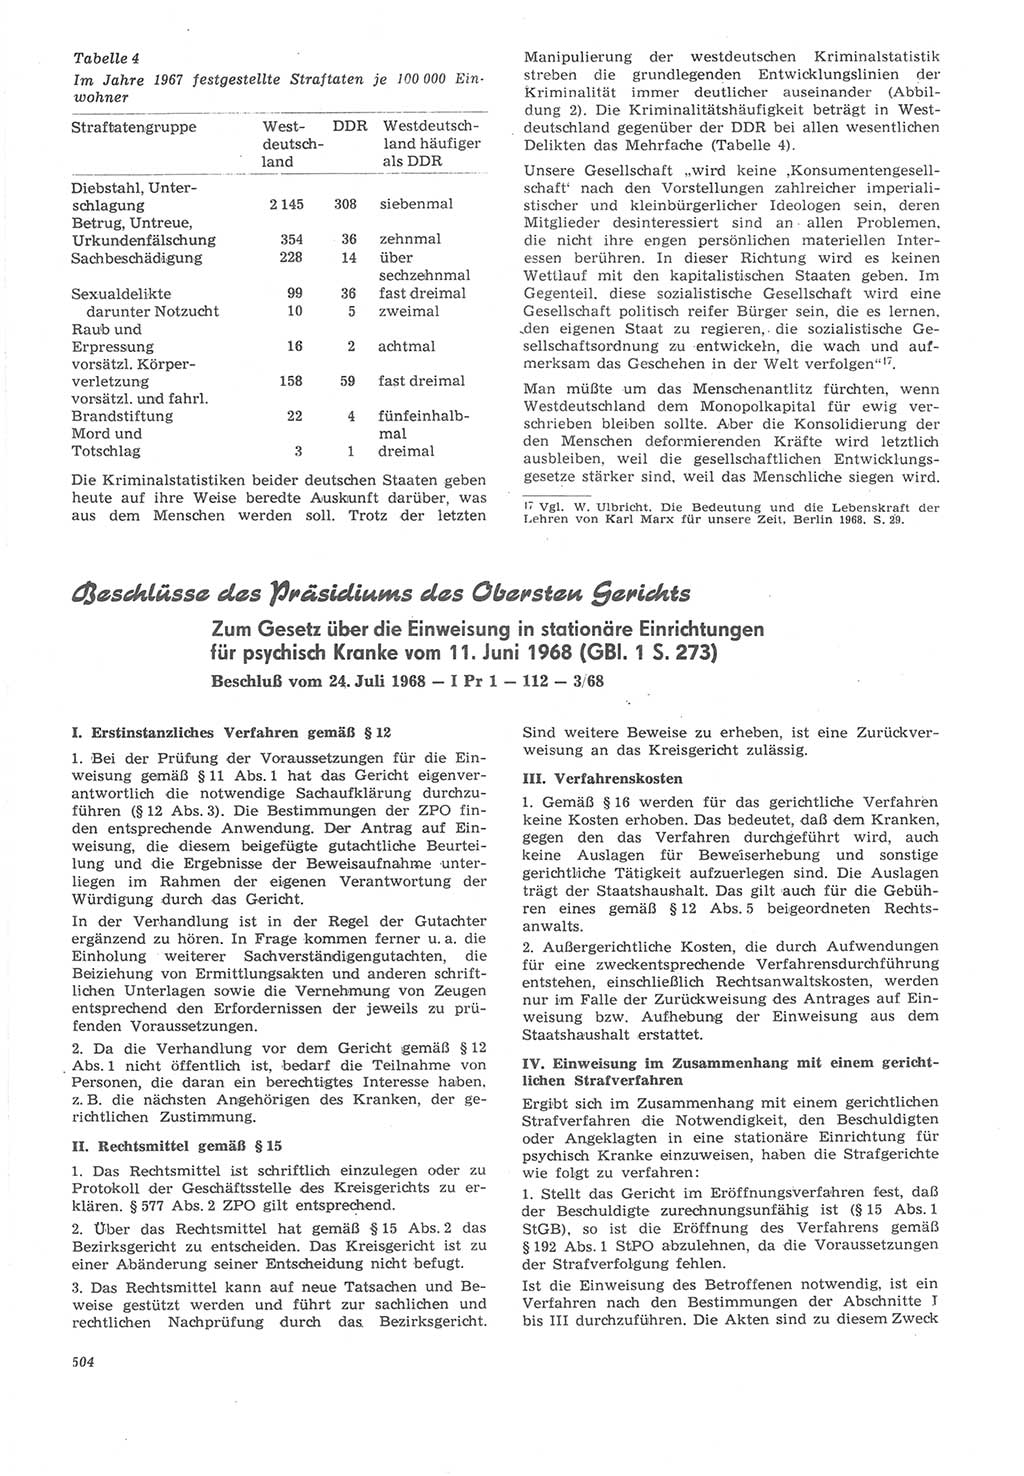 Neue Justiz (NJ), Zeitschrift für Recht und Rechtswissenschaft [Deutsche Demokratische Republik (DDR)], 22. Jahrgang 1968, Seite 504 (NJ DDR 1968, S. 504)